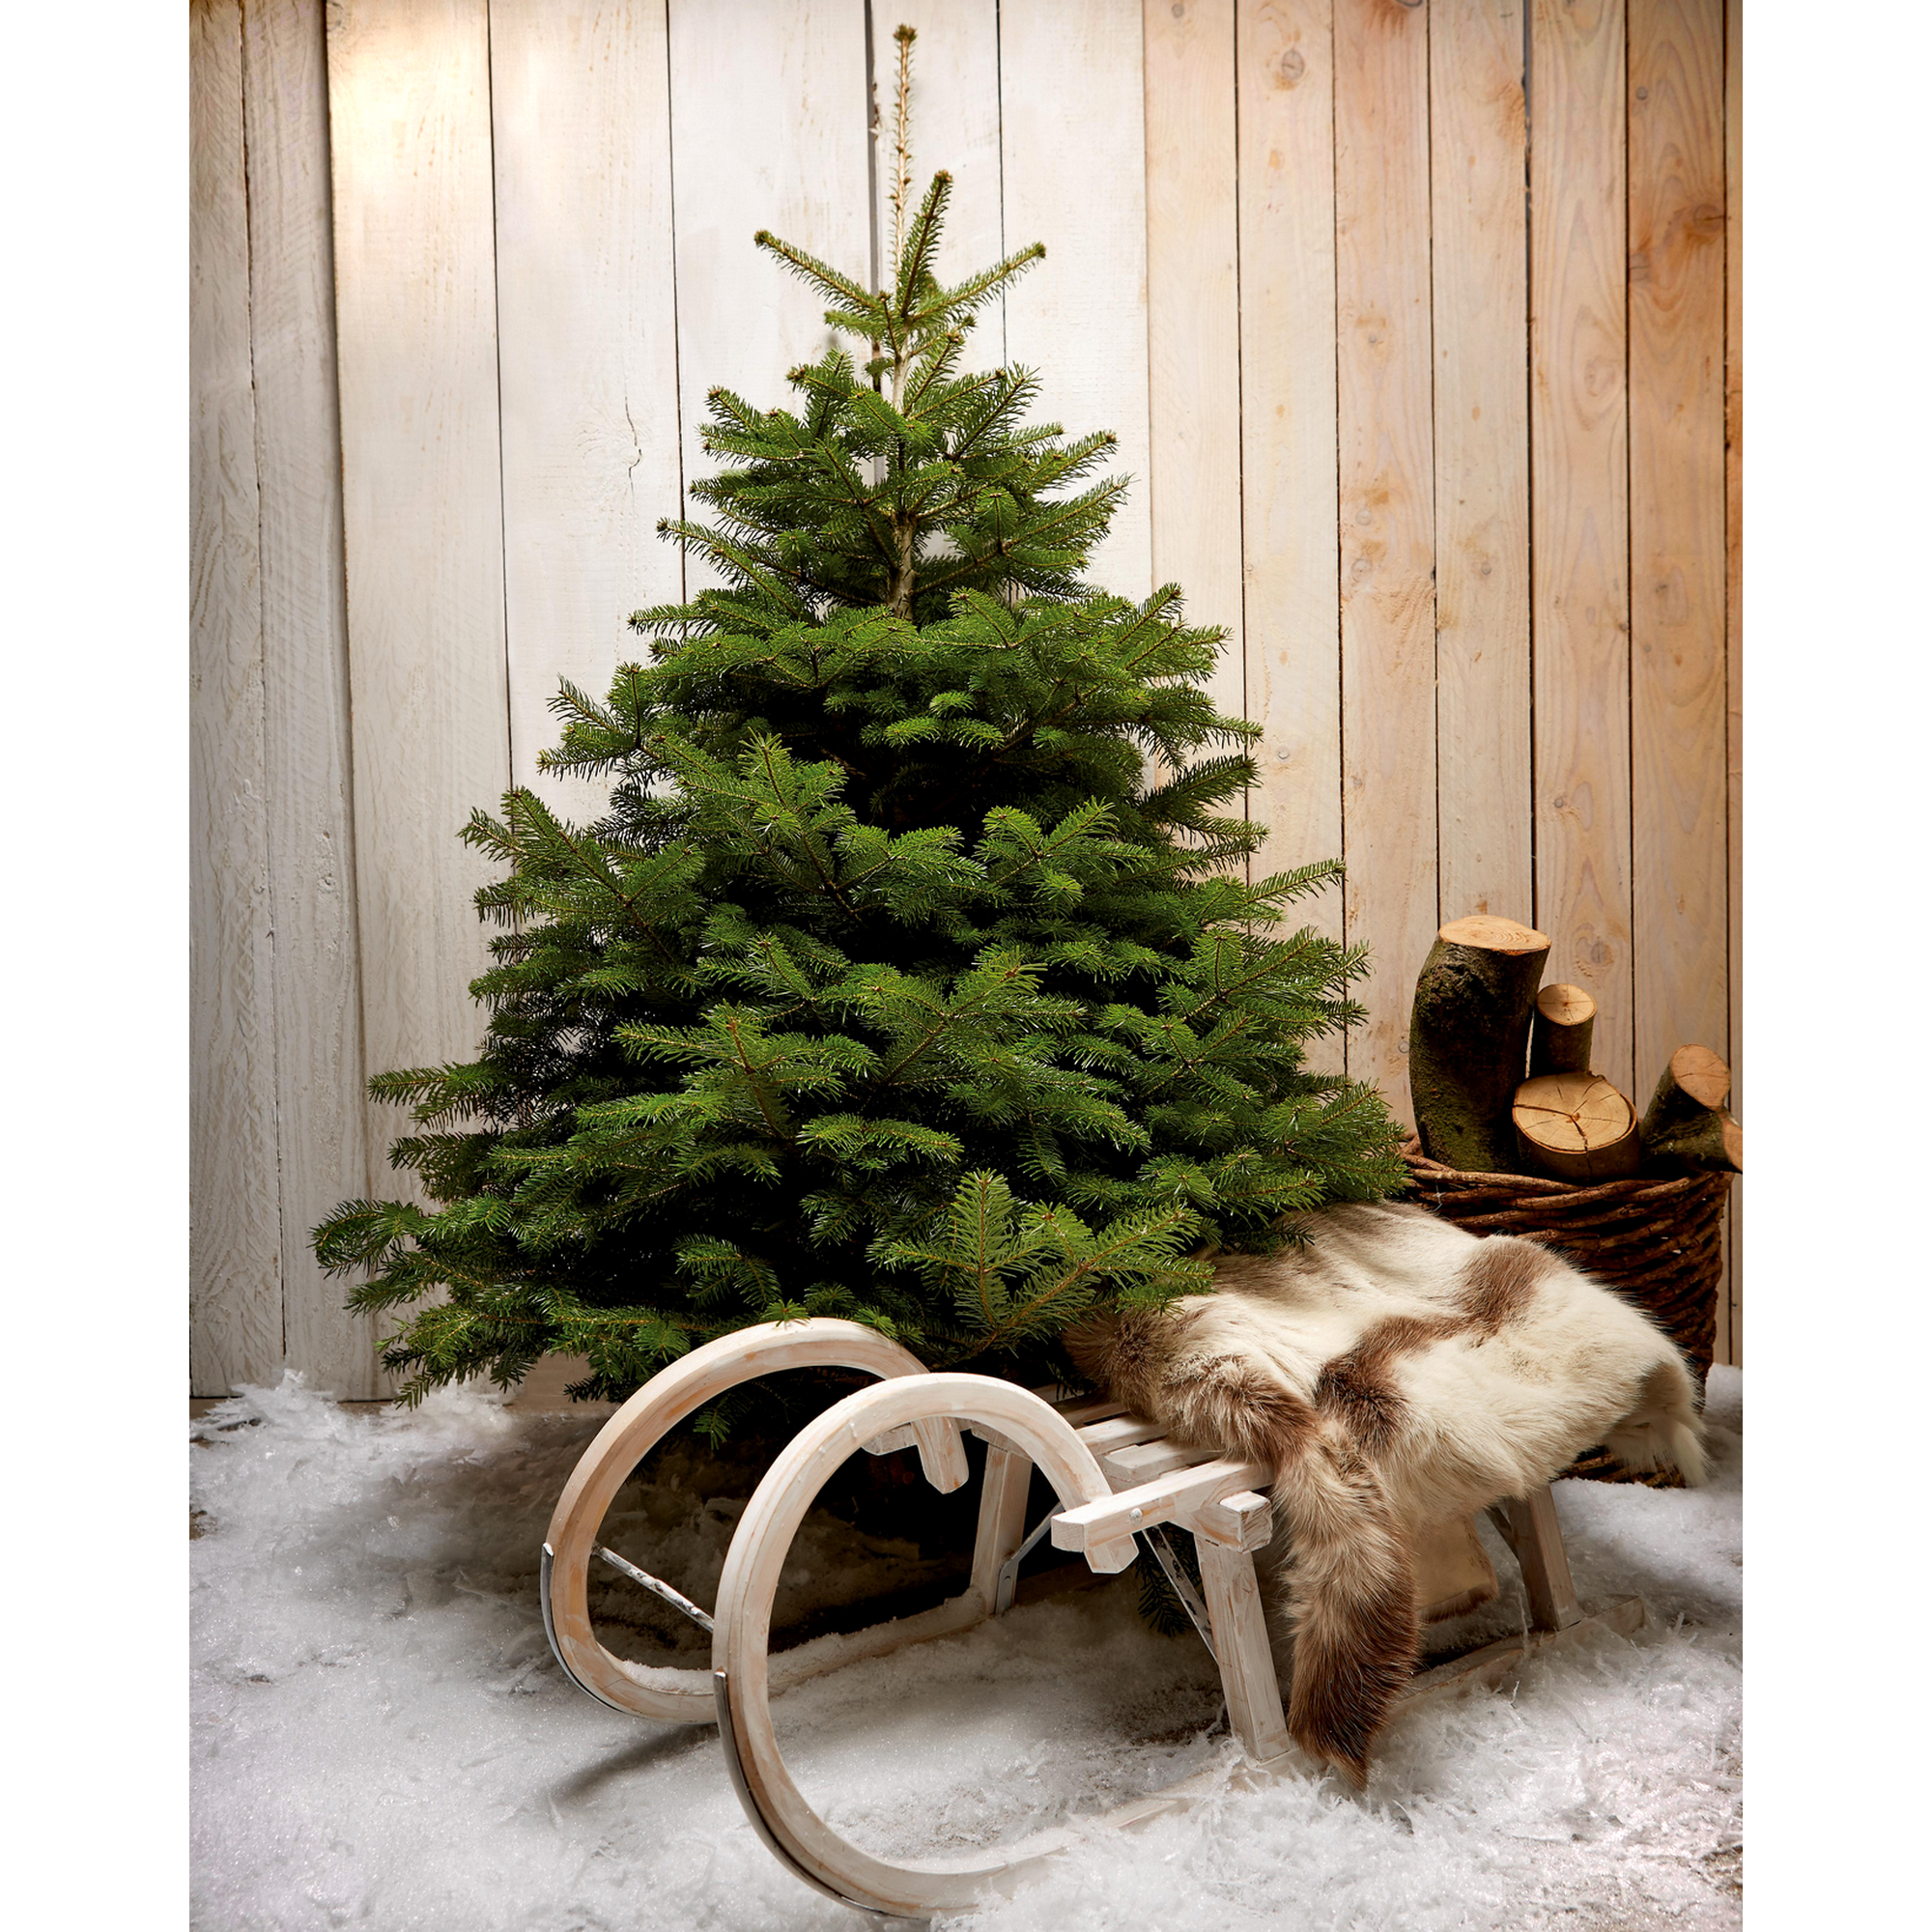 Fair Trees® Bio-Weihnachtsbaum Nordmanntanne gesägt 180-220 cm + product picture